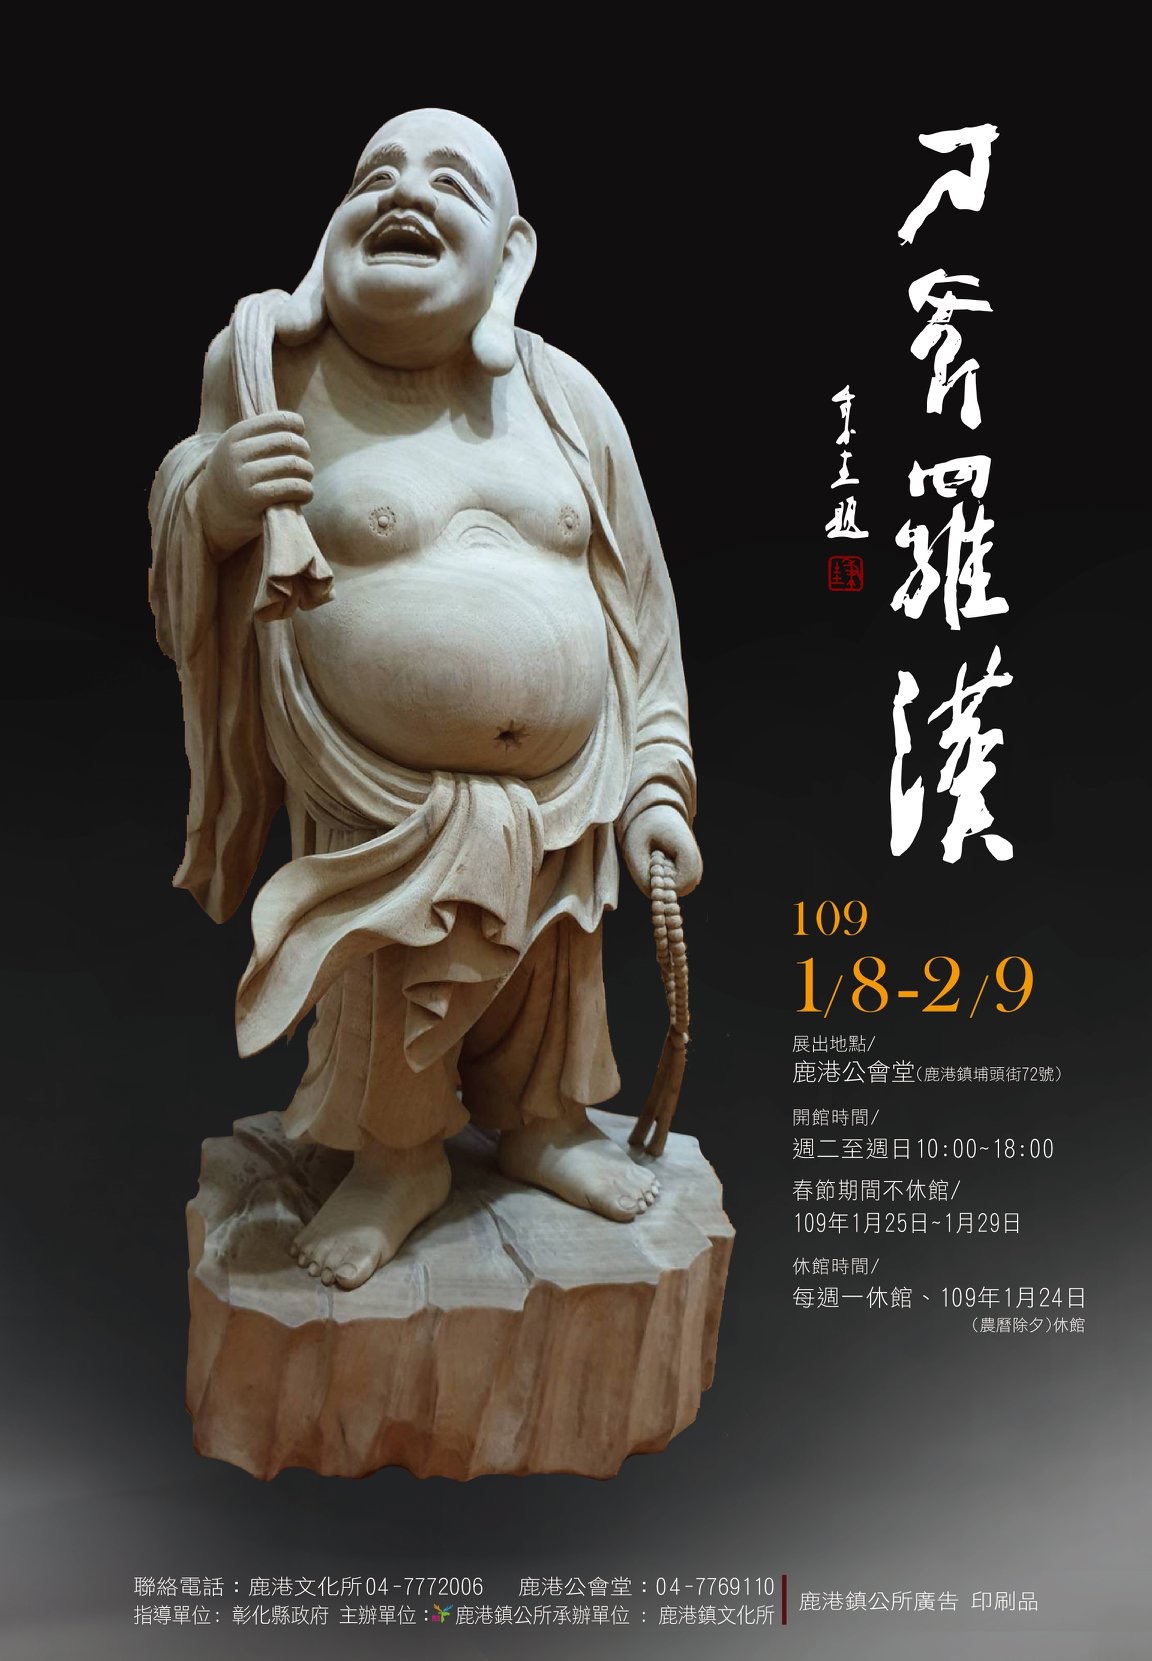 鹿港公會堂展覽:刀斧羅漢-人間國寶李秉圭雕刻展